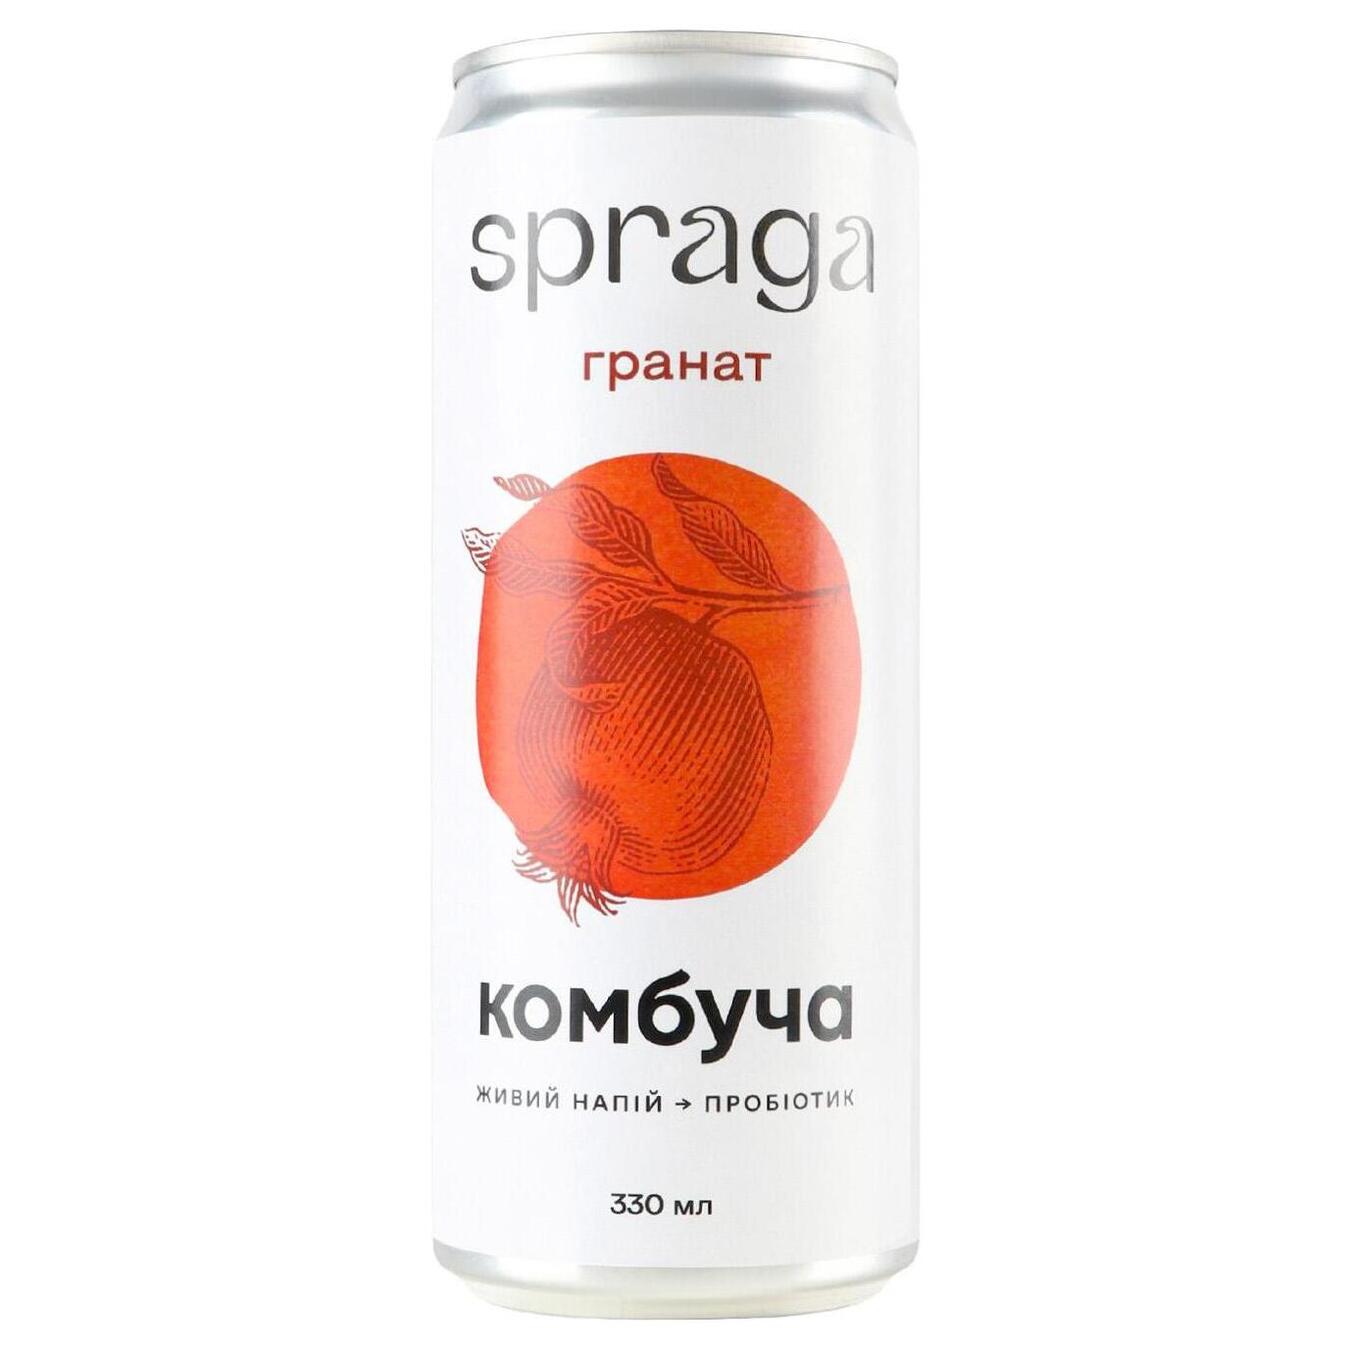 Low-carbonated drink SPRAGA kombucha pomegranate 0.33 l b/w